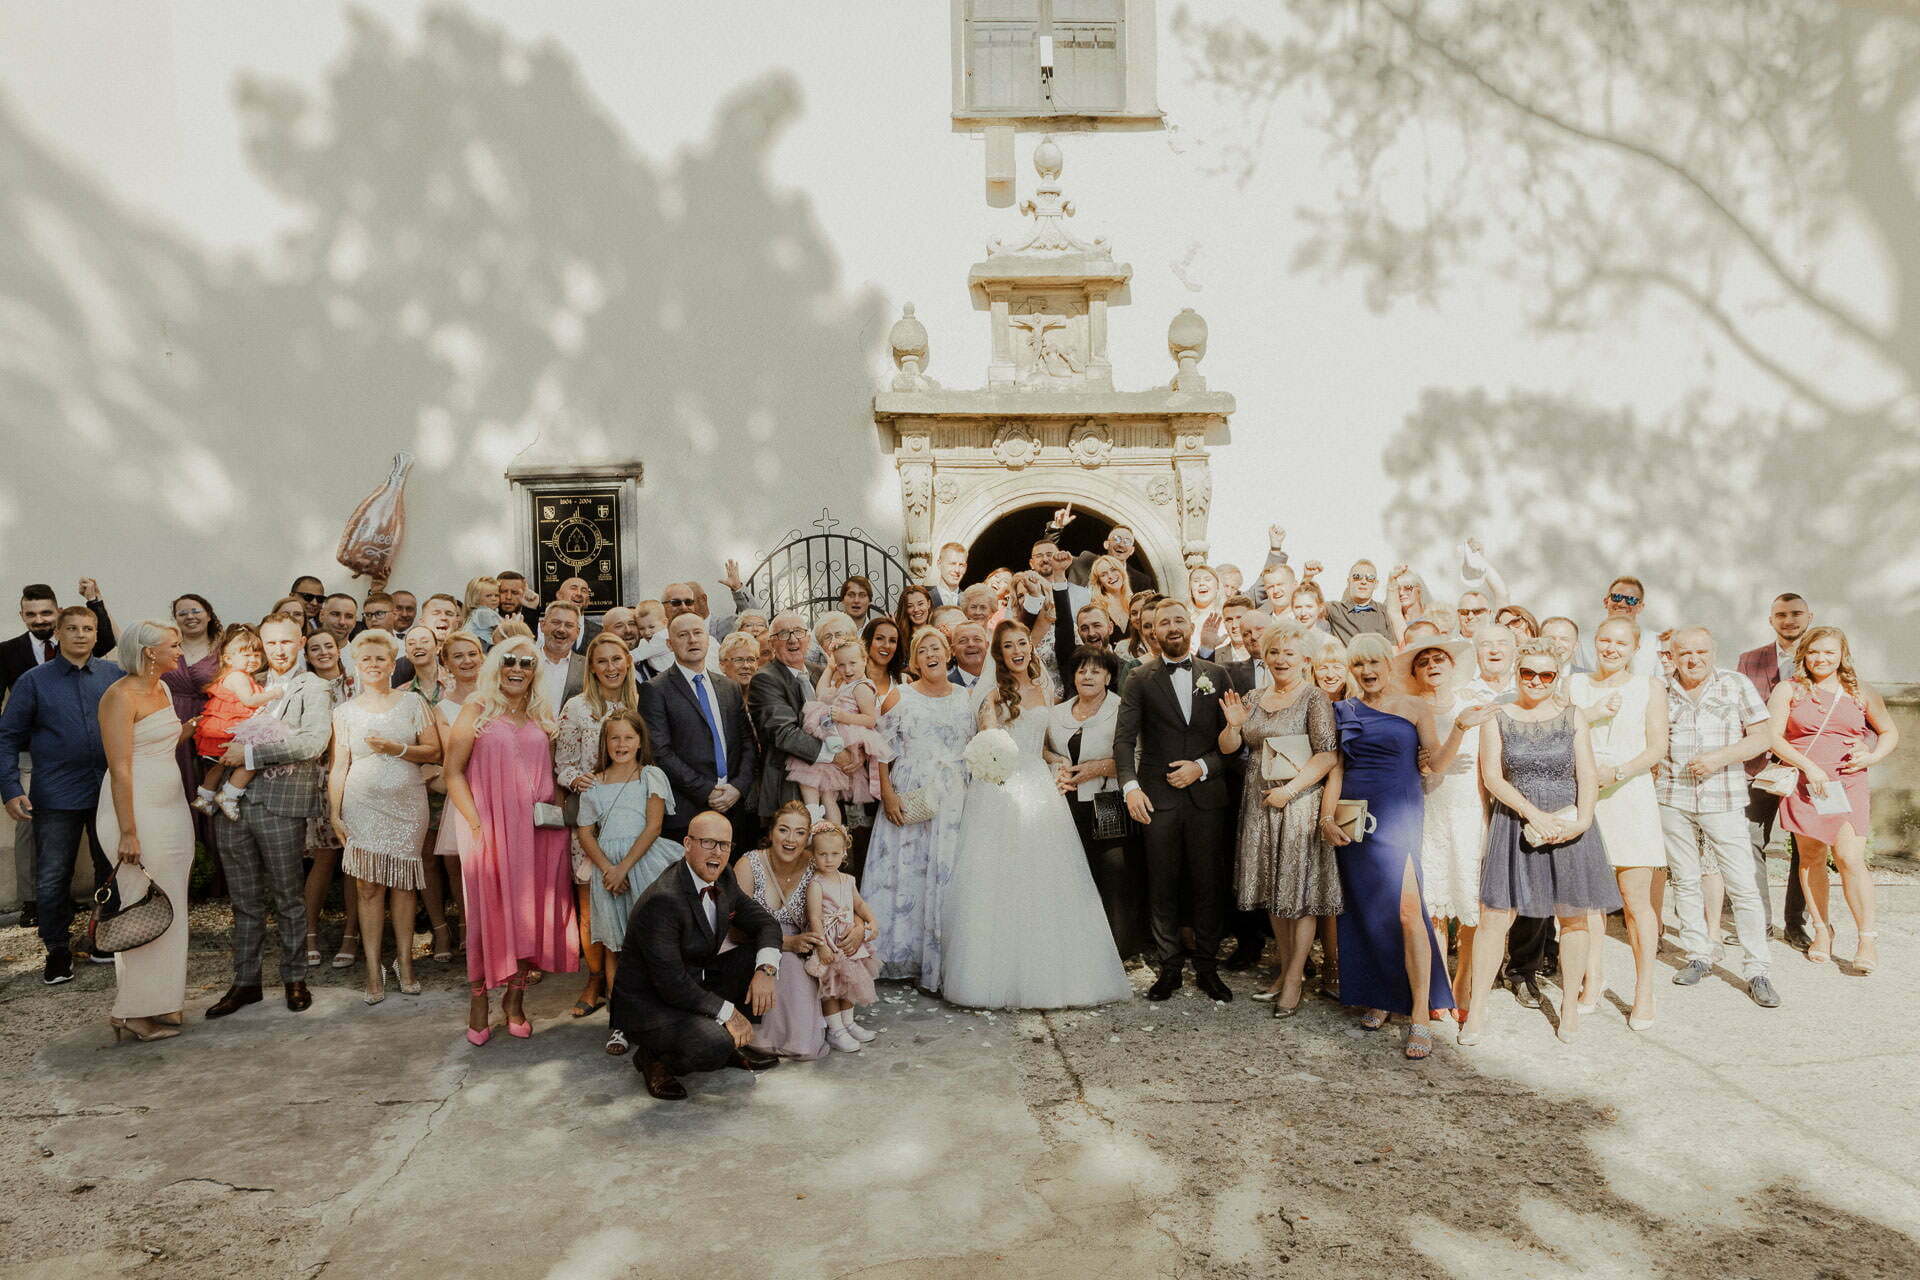 zdjęcie grupowe gości weselnych